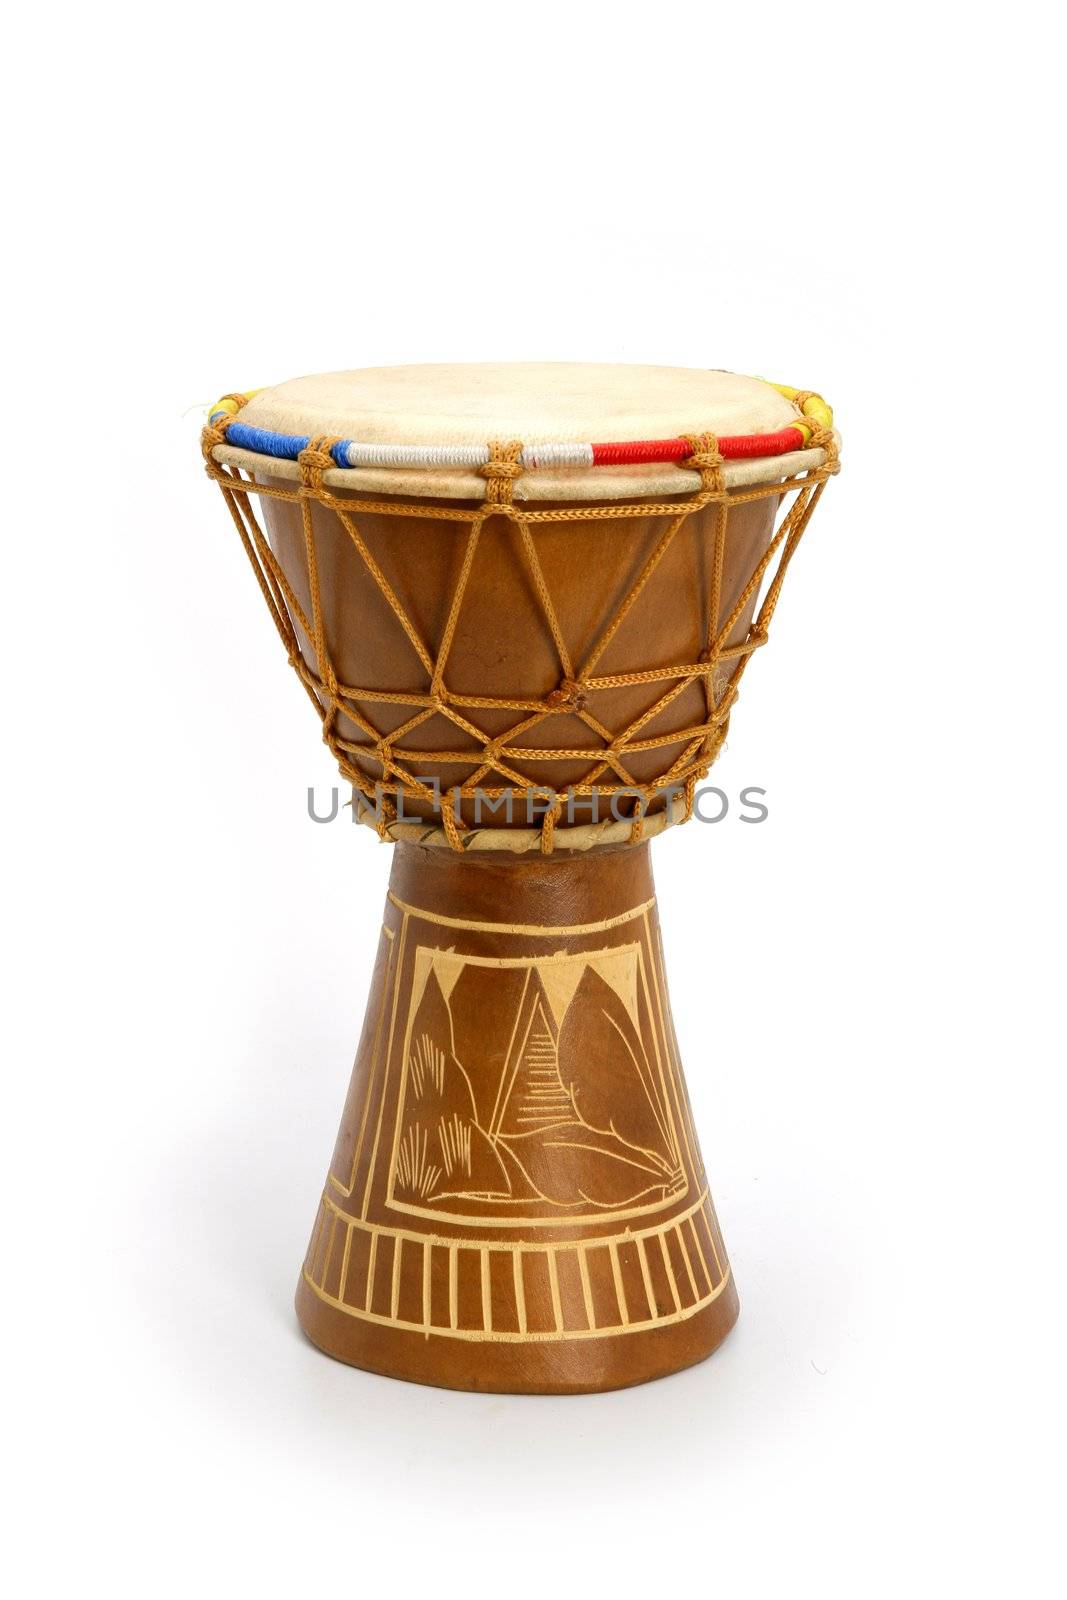 Djembe drum by phovoir